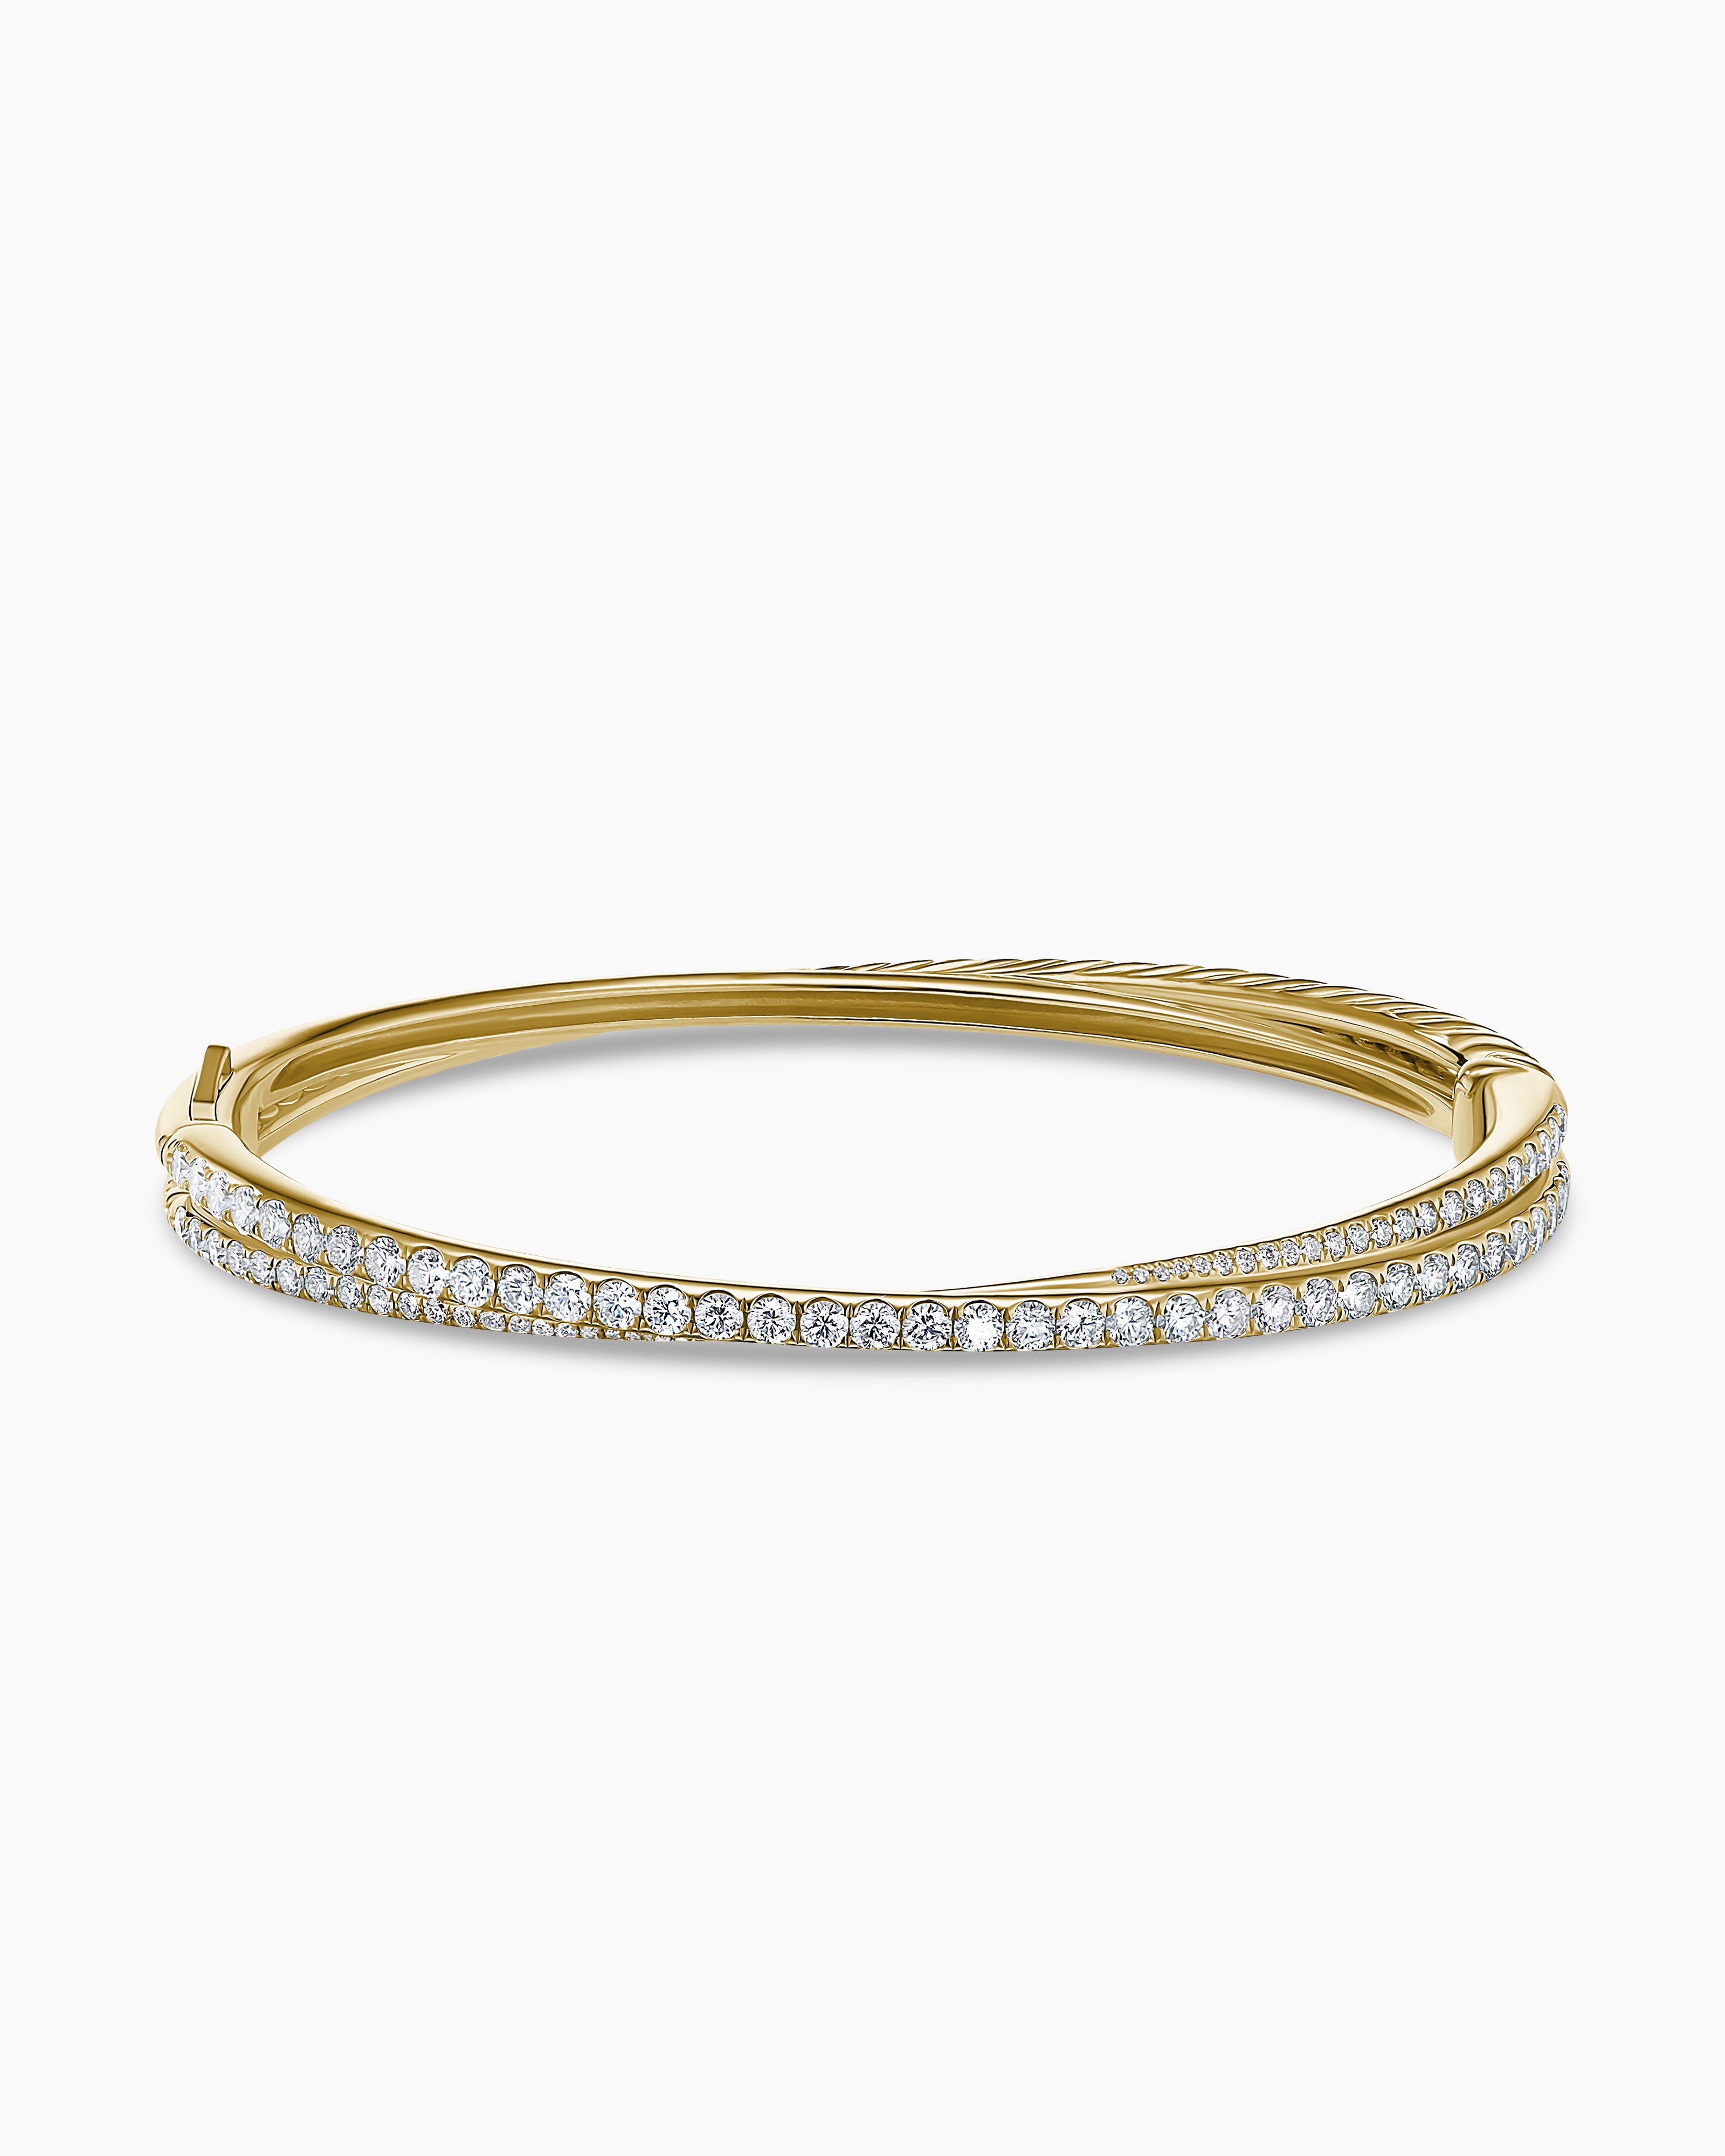 The Gold Gods 4mm White Gold Diamond Tennis Bracelet